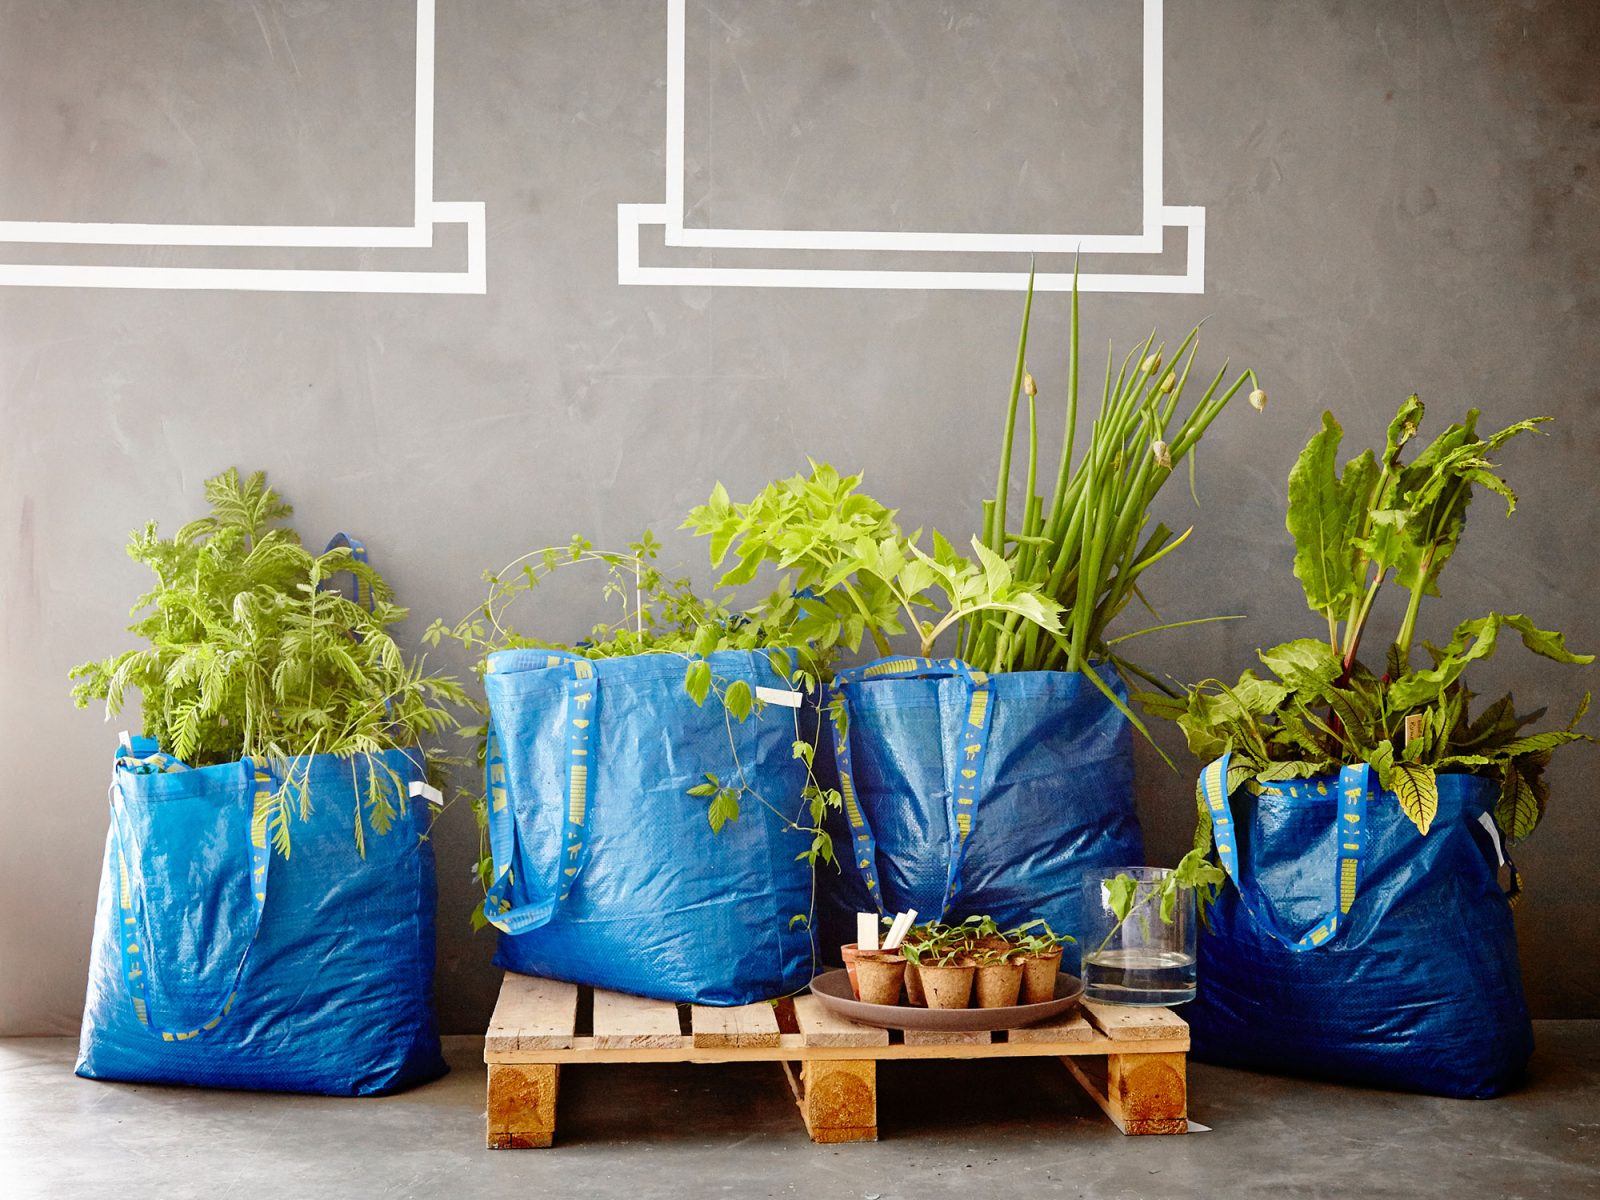 Sacs bleus FRAKTA alignés, utilisés comme jardinières avec plantes vertes luxuriantes.